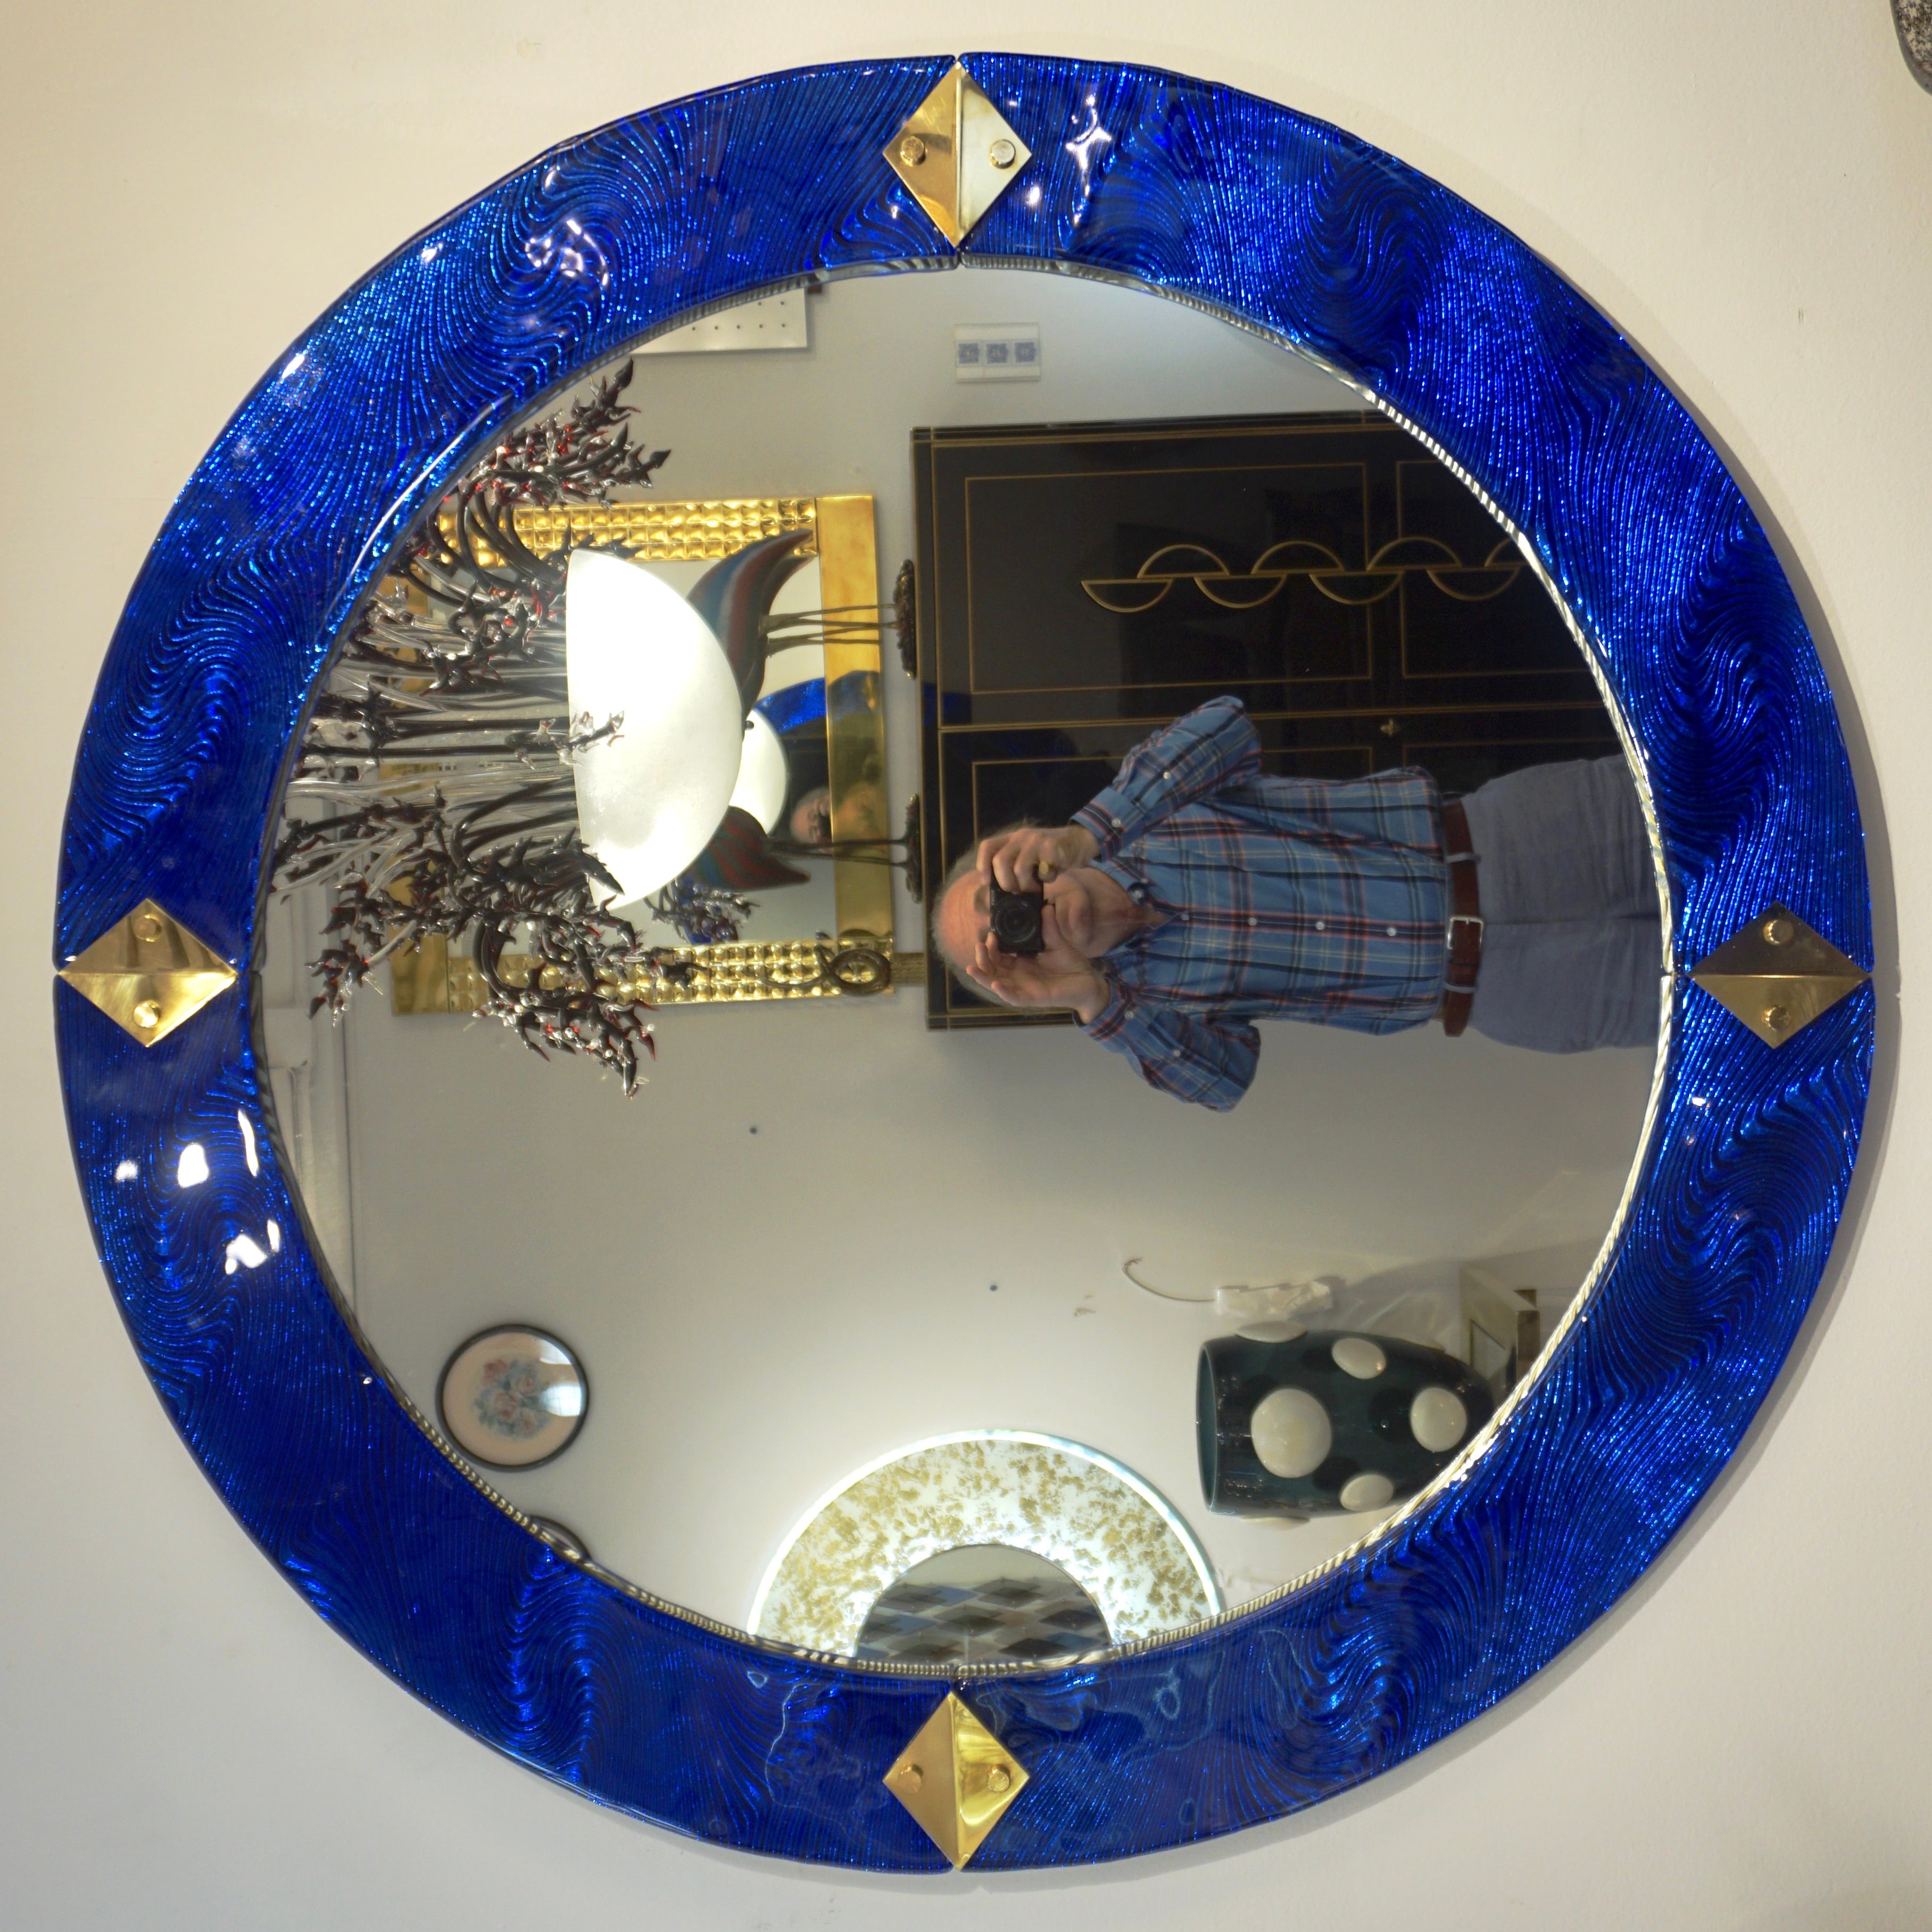 Miroir rond italien sur mesure en laiton et verre de Murano bleu cobalt texturé